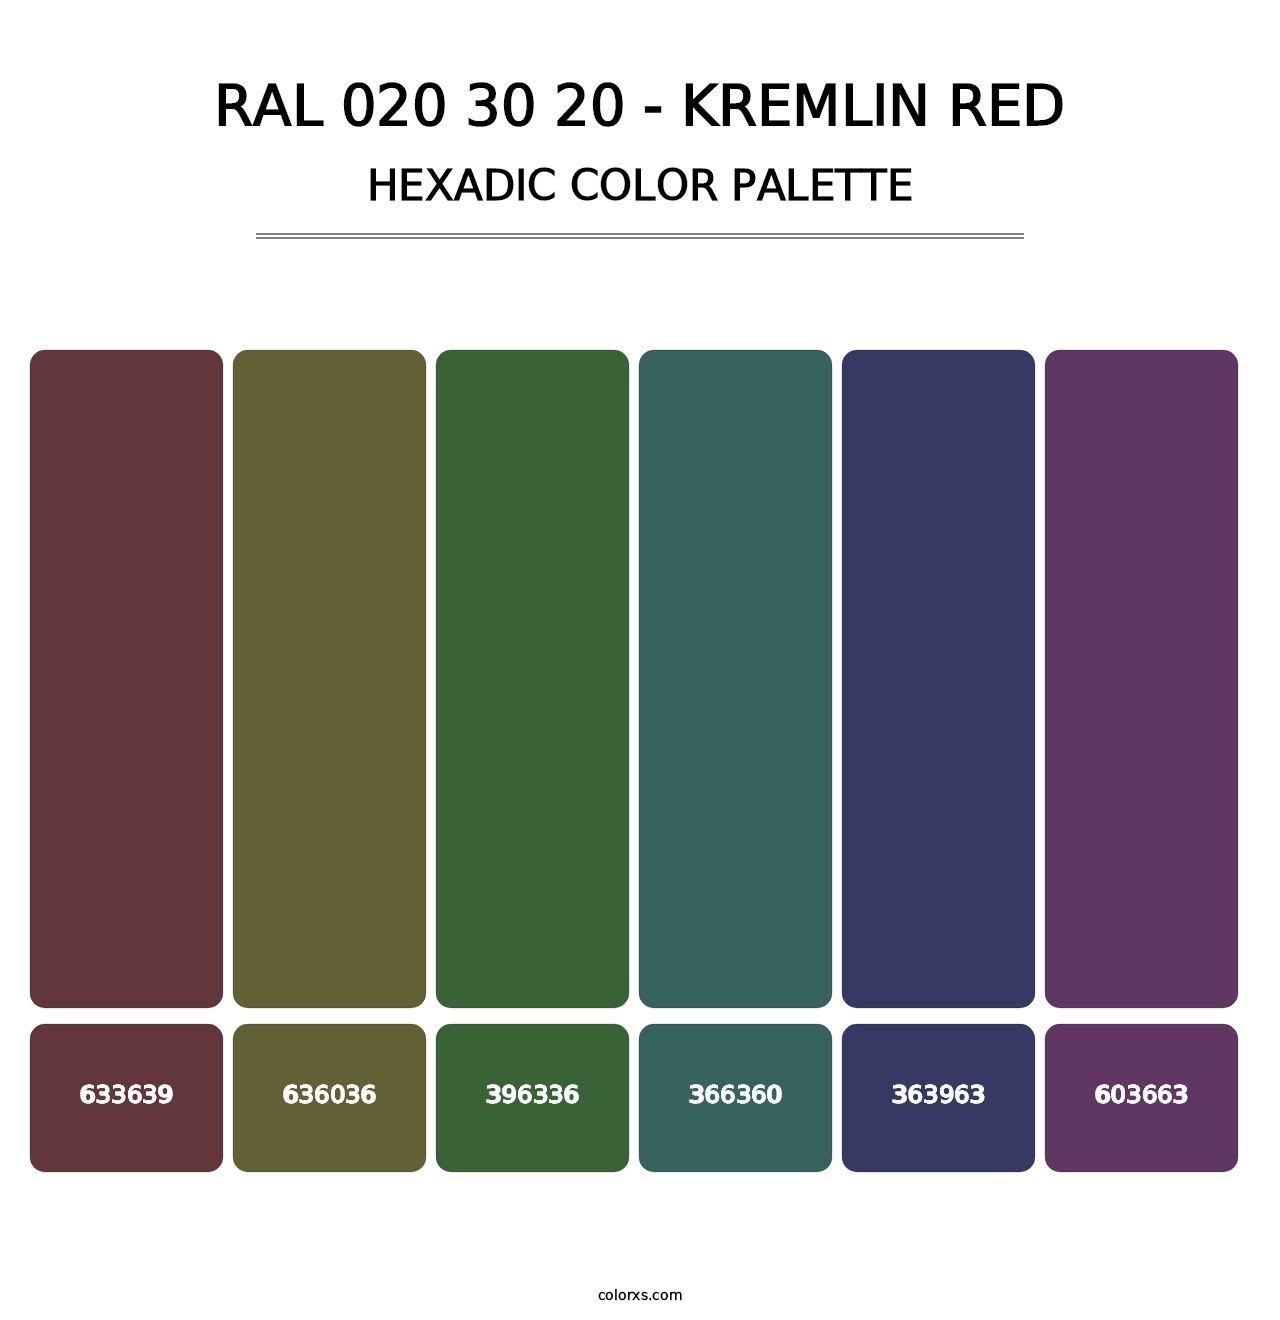 RAL 020 30 20 - Kremlin Red - Hexadic Color Palette